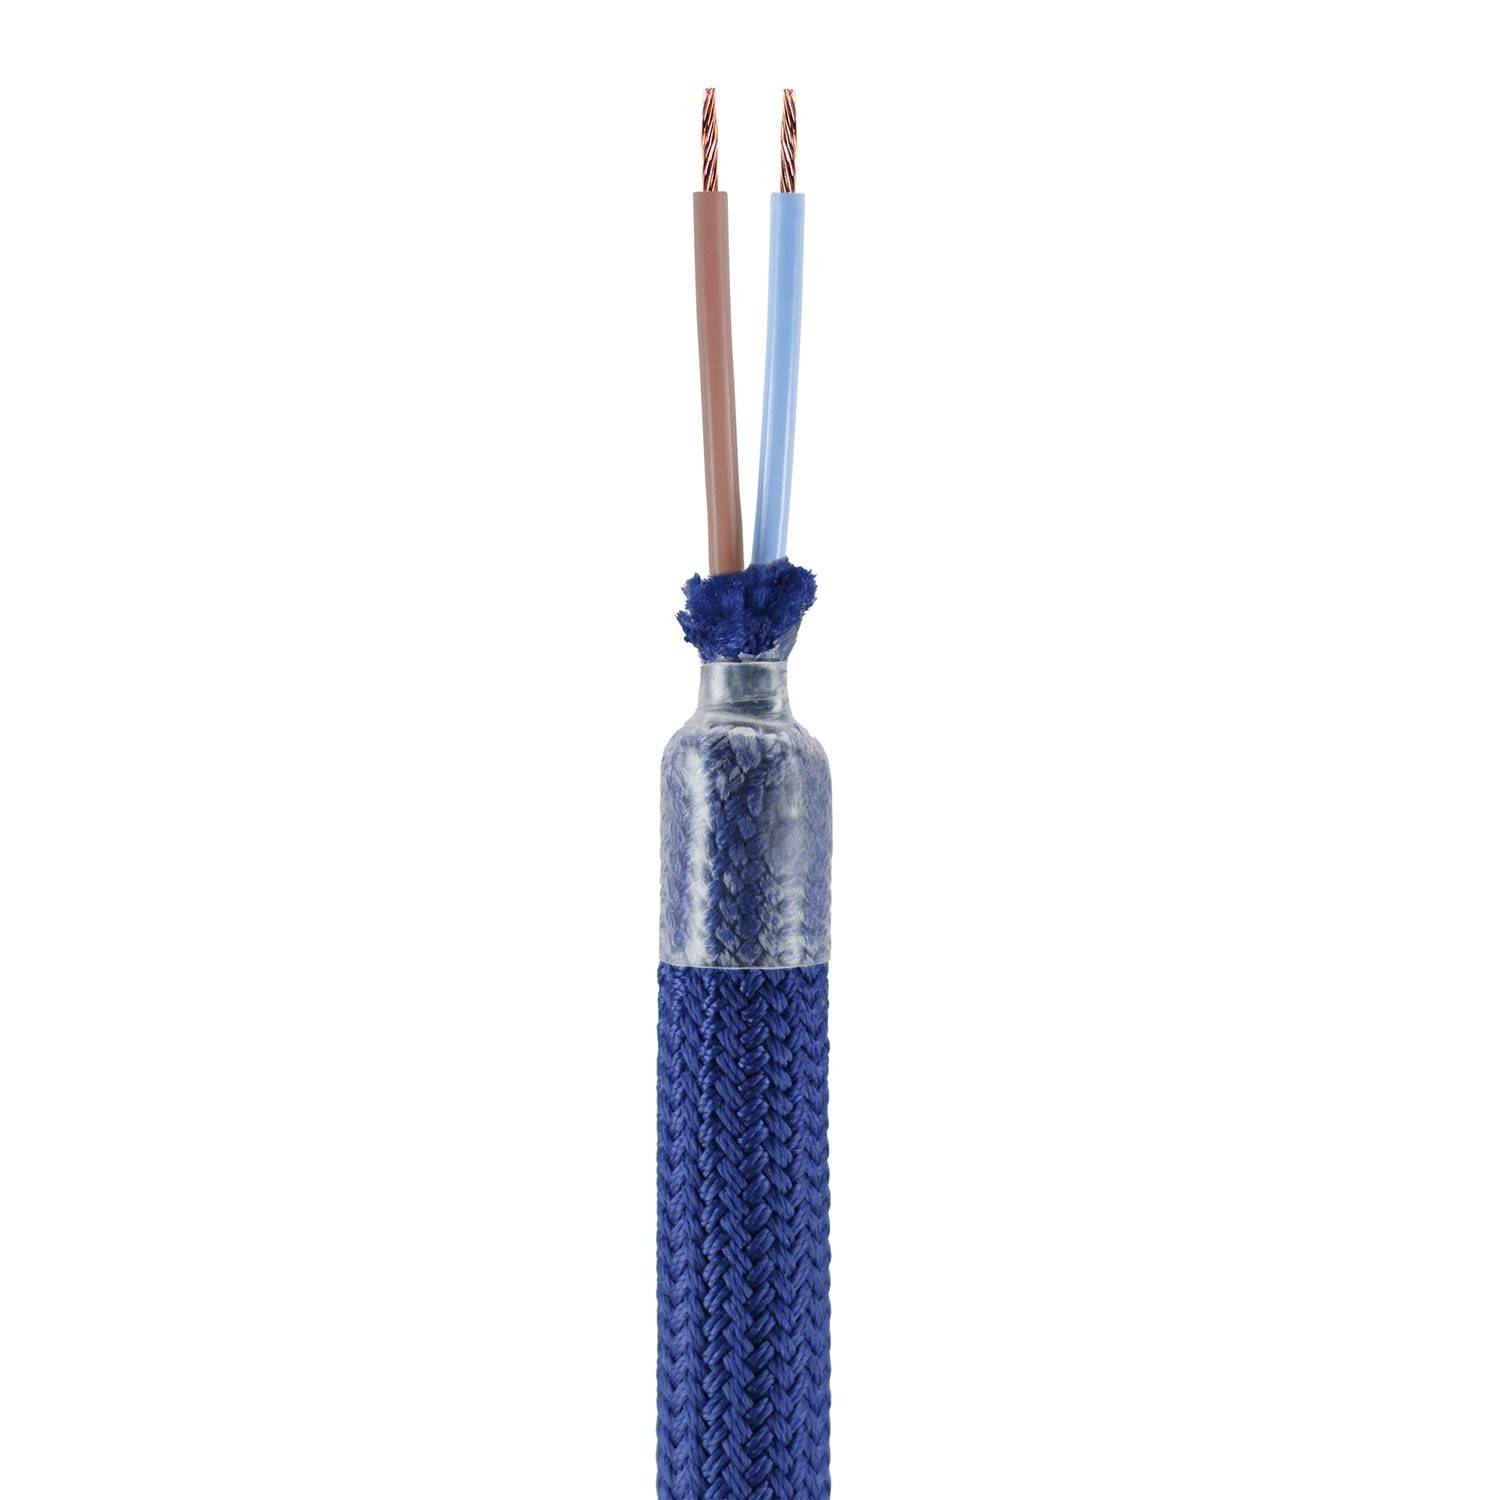 Kitul Creative Flex constă într-un tub flexibil acoperit cu material de culoare bleu marin RM20, prevăzut cu terminale metalice.